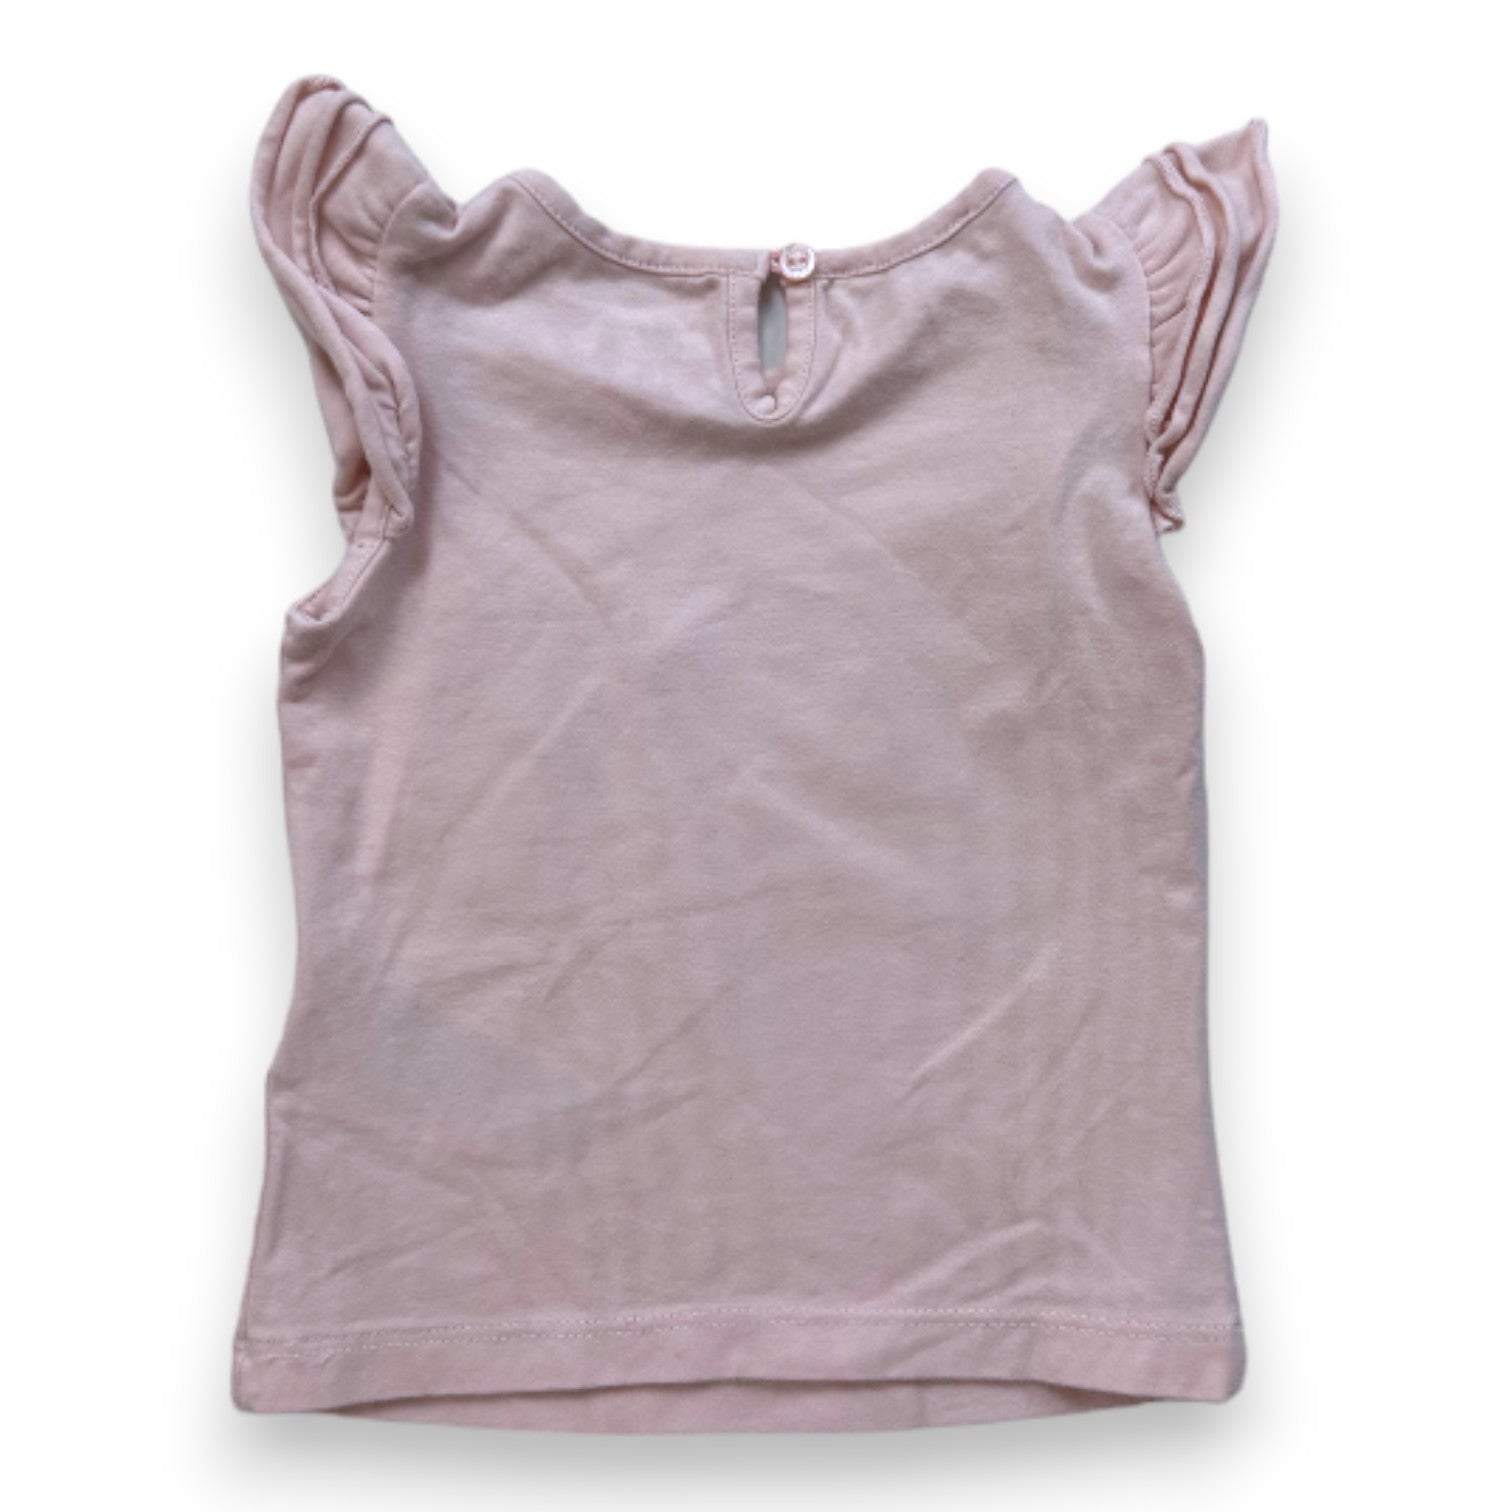 GUCCI - T-shirt rose à manches courtes avec imprimé - 6 mois